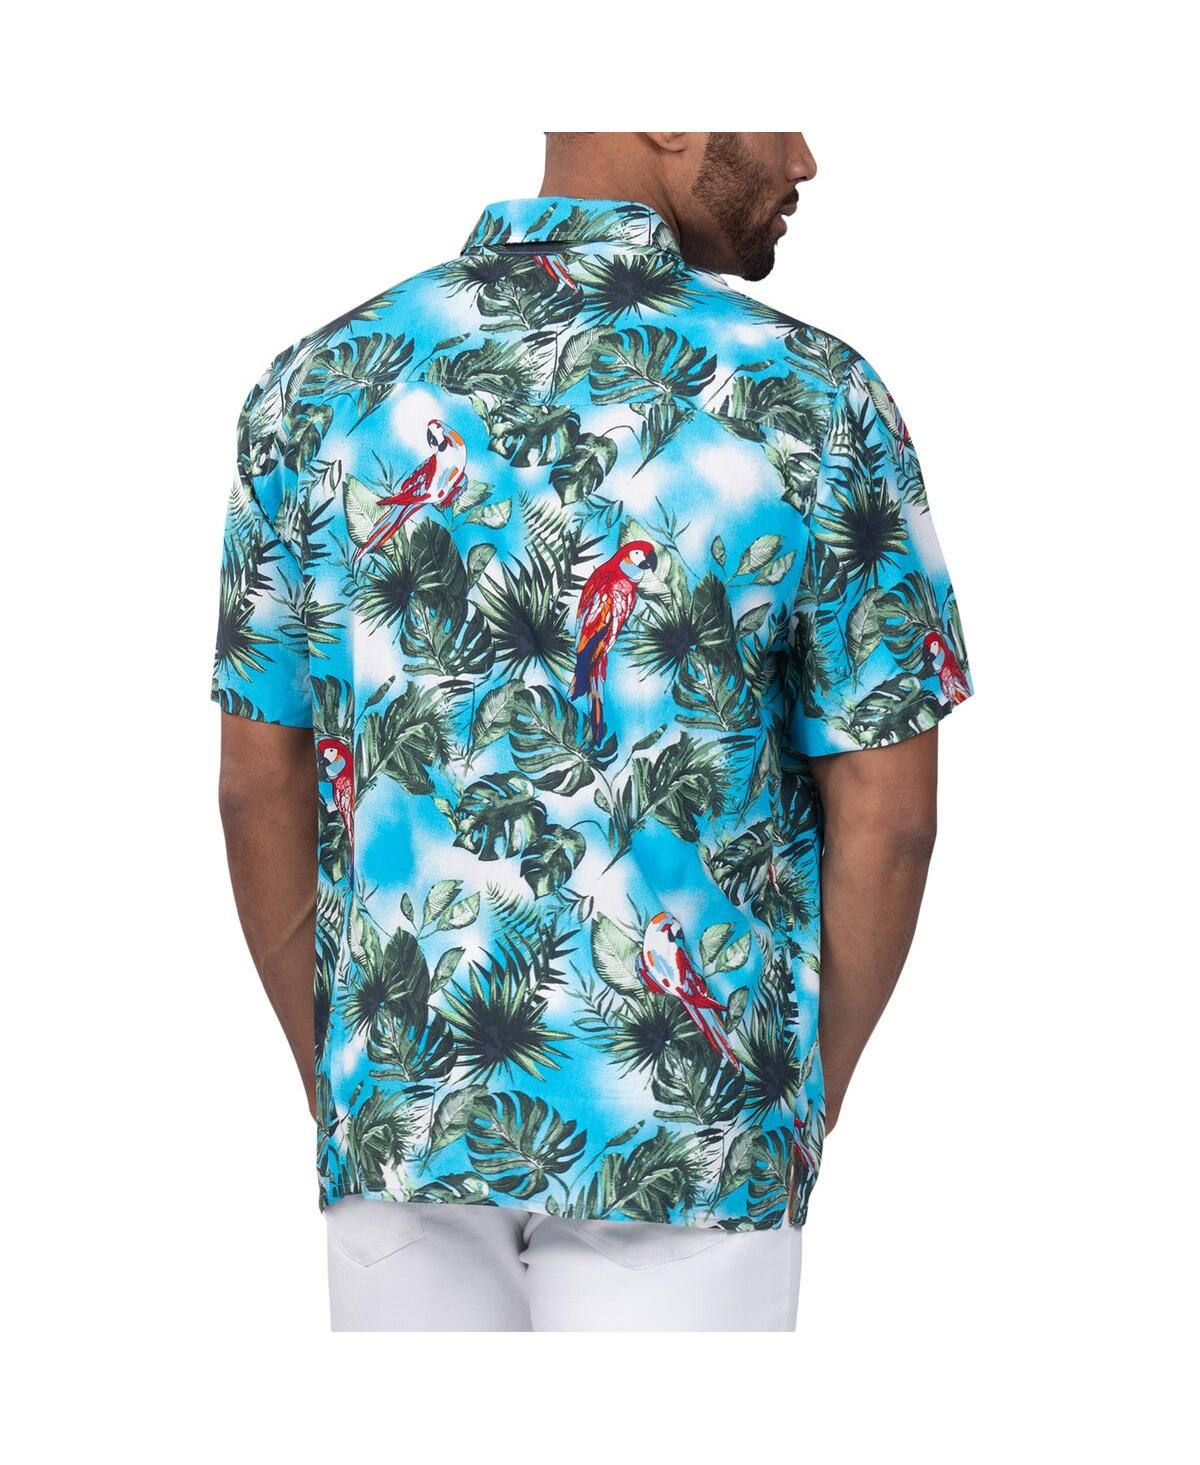 Shop Margaritaville Men's  Light Blue Miami Dolphins Jungle Parrot Party Button-up Shirt